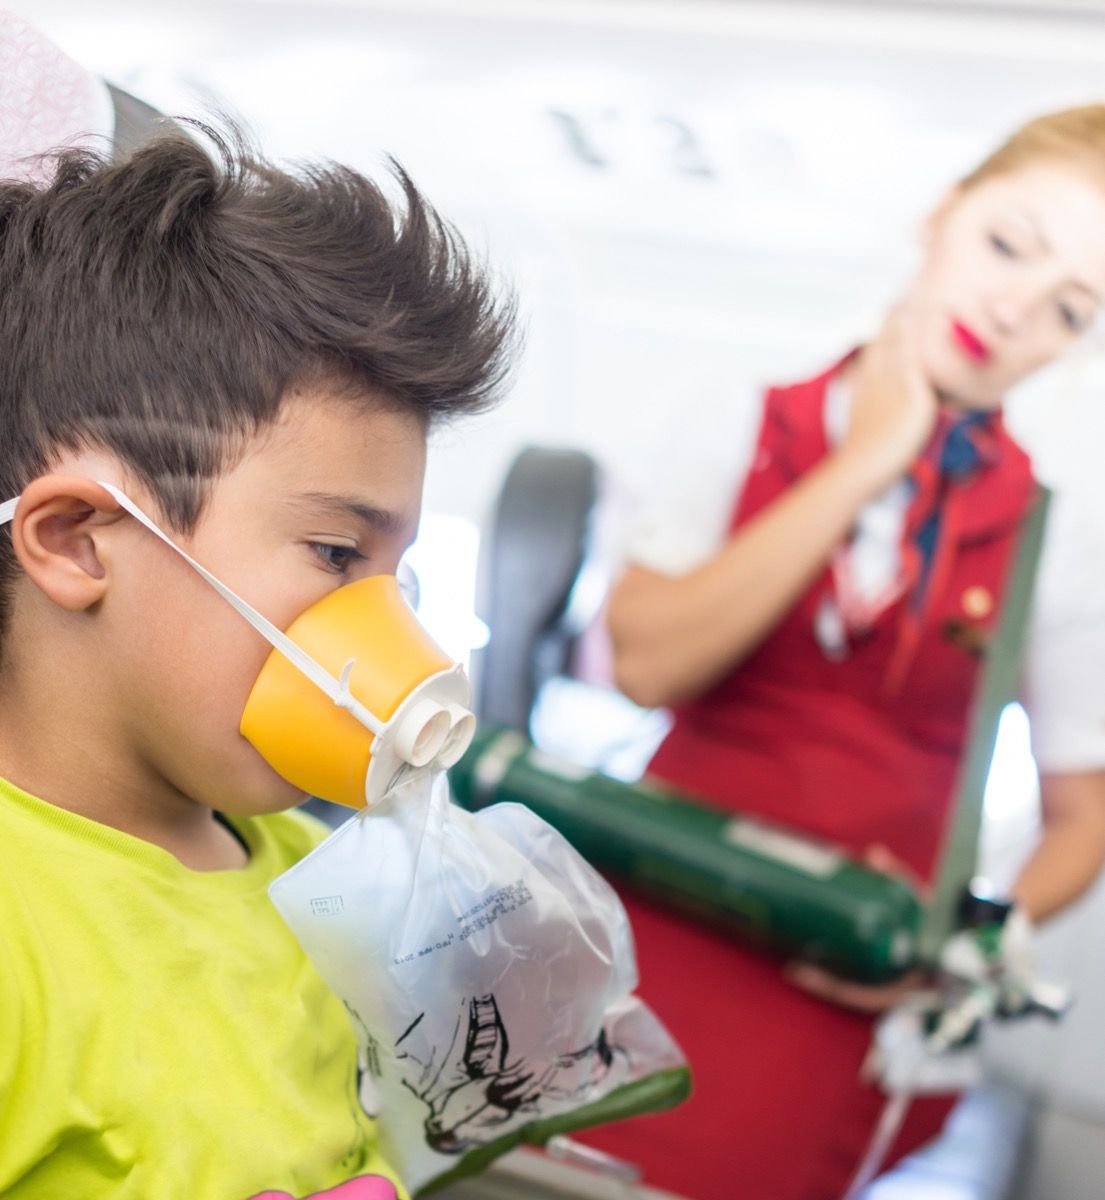 anak laki-laki di kursi pesawat dengan masker oksigen saat pramugari melihatnya, pramugari kesal